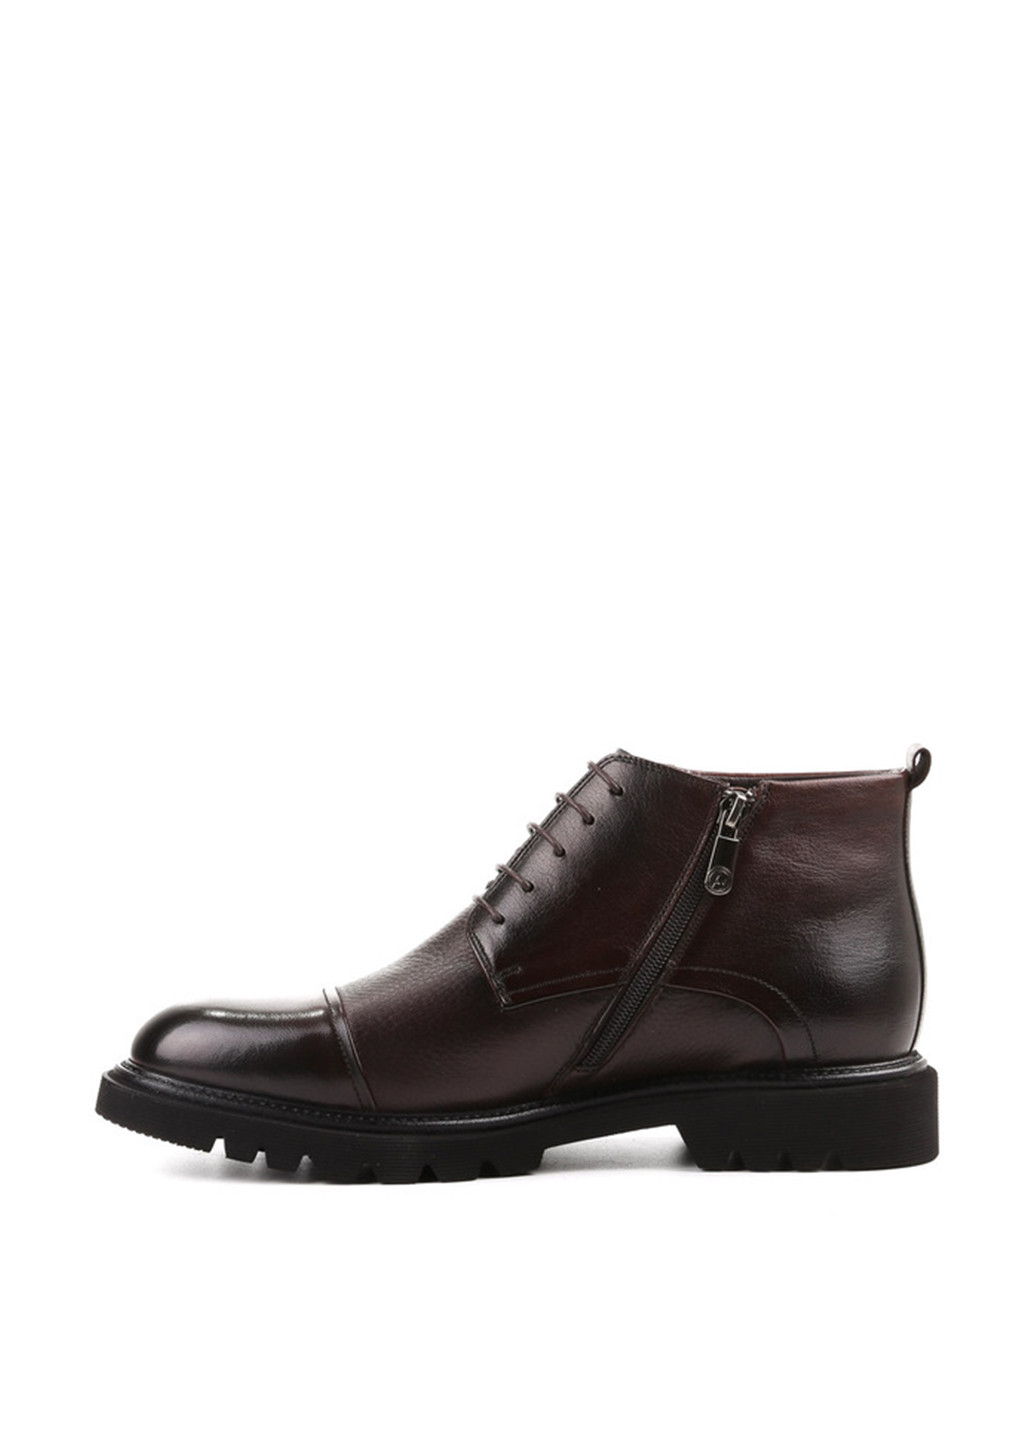 Темно-коричневые зимние ботинки броги Arzoni Bazalini